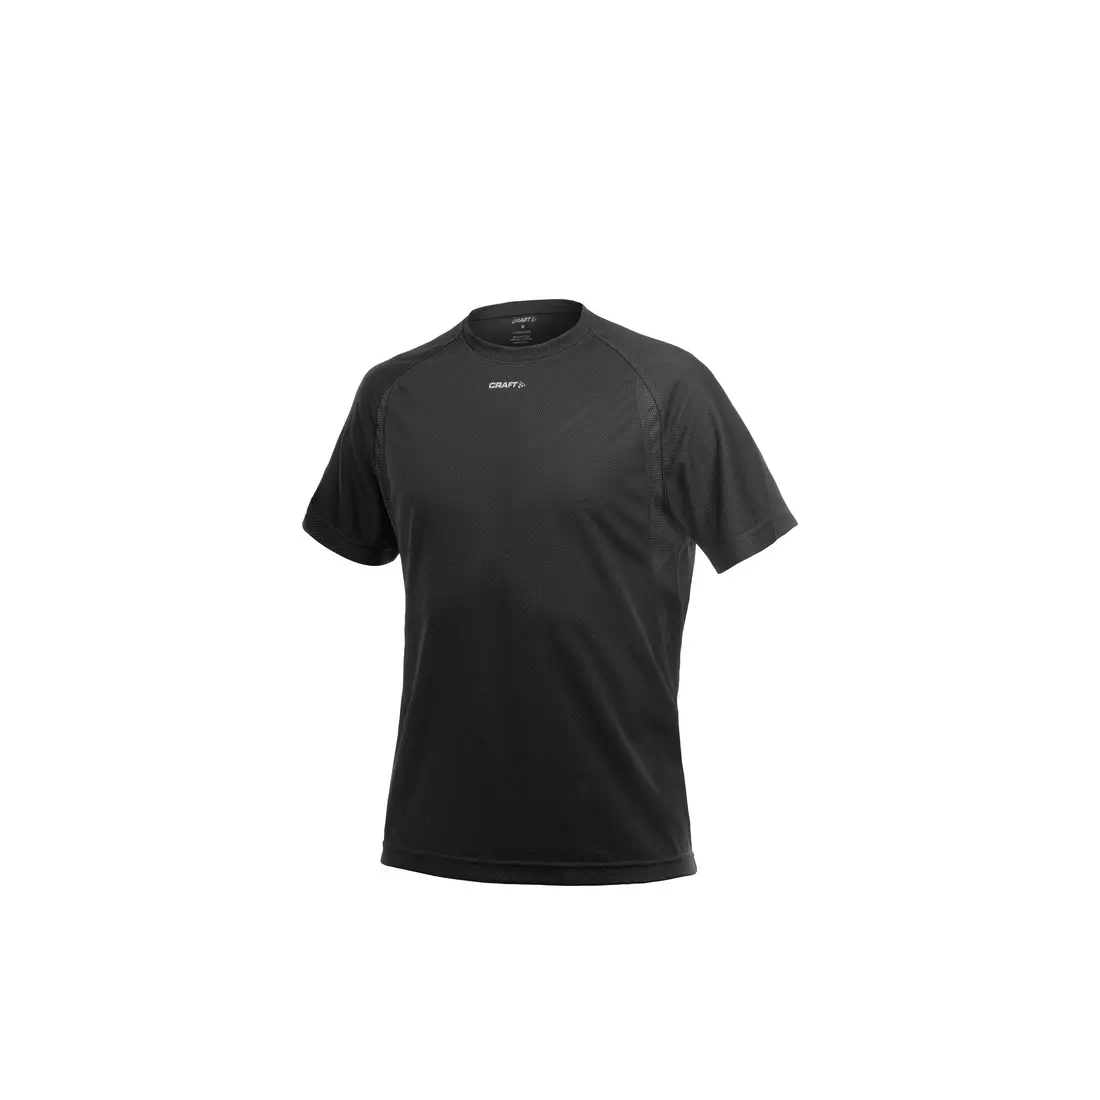 CRAFT ACTIVE RUN 1900655-9999 – Lauf-T-Shirt für Herren